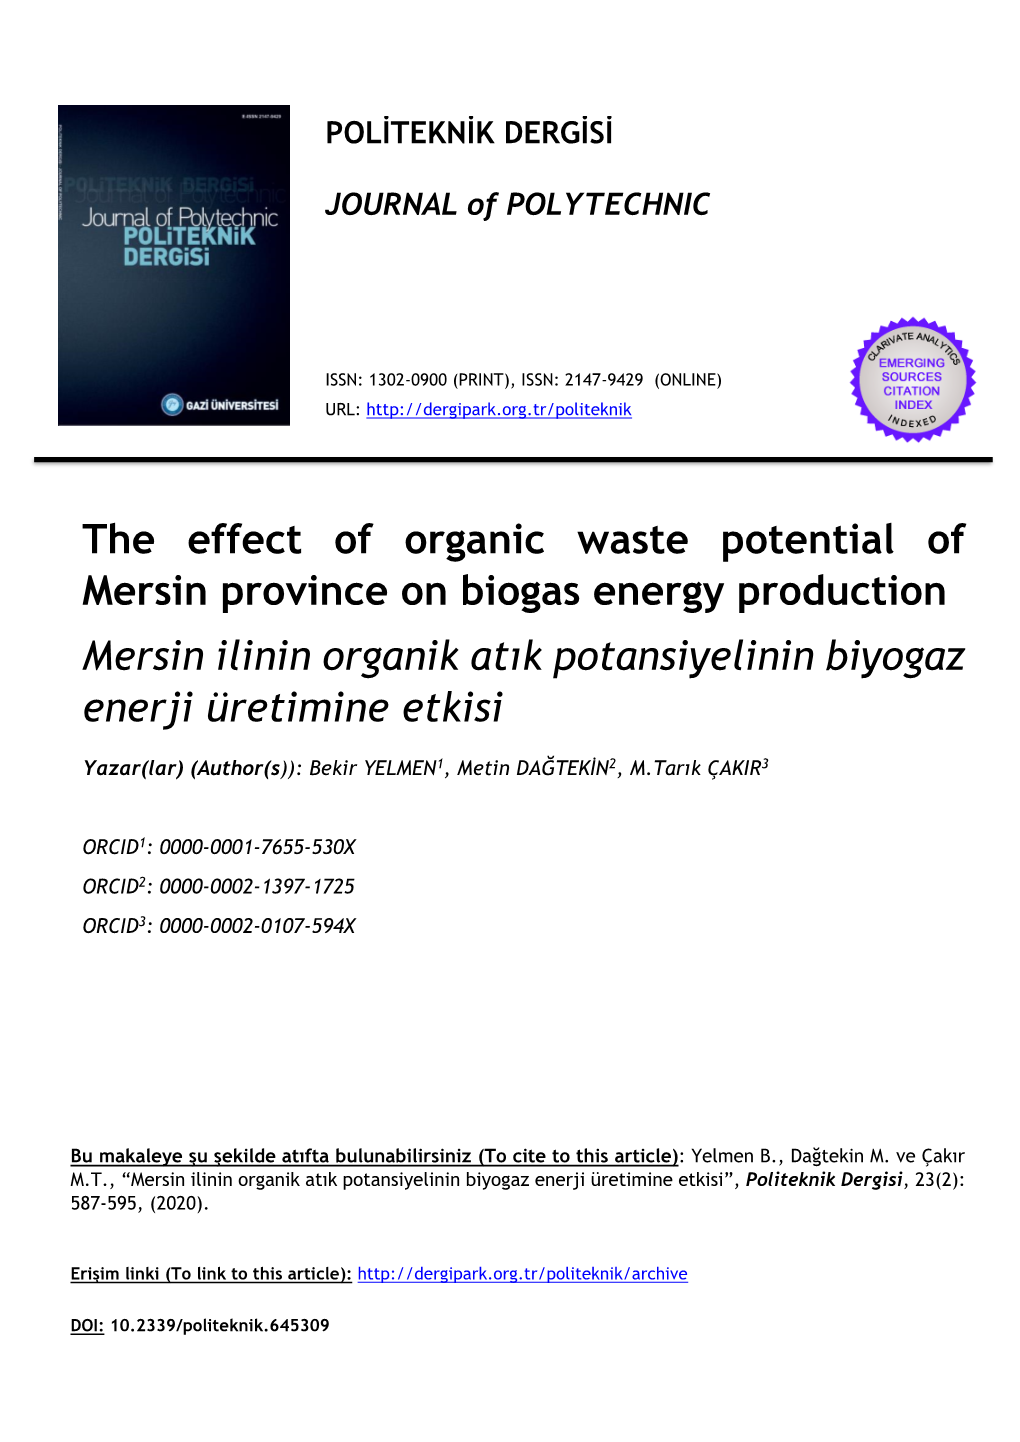 The Effect of Organic Waste Potential of Mersin Province on Biogas Energy Production Mersin Ilinin Organik Atık Potansiyelinin Biyogaz Enerji Üretimine Etkisi